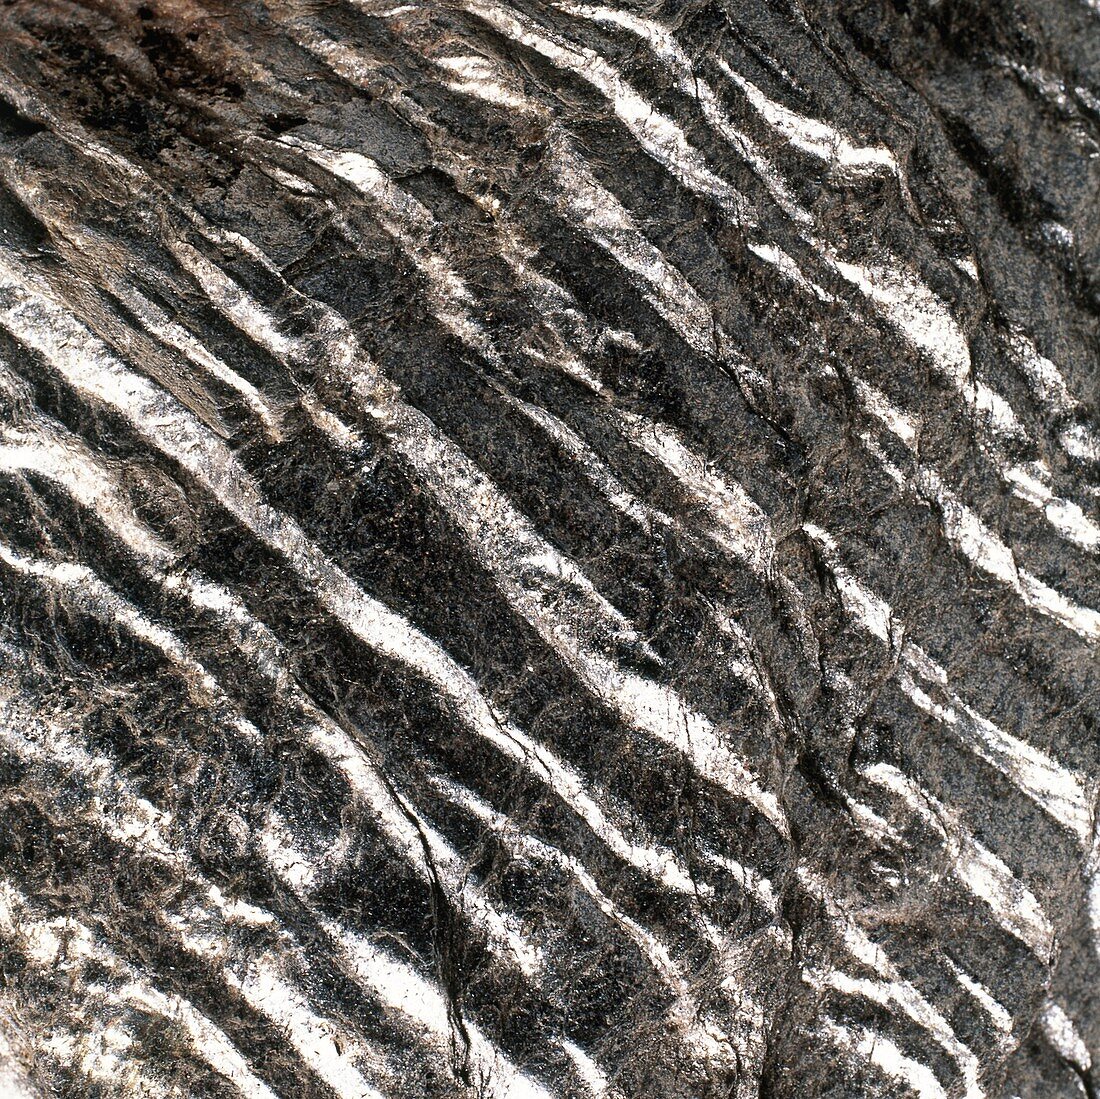 Magnification of grain of schist rock